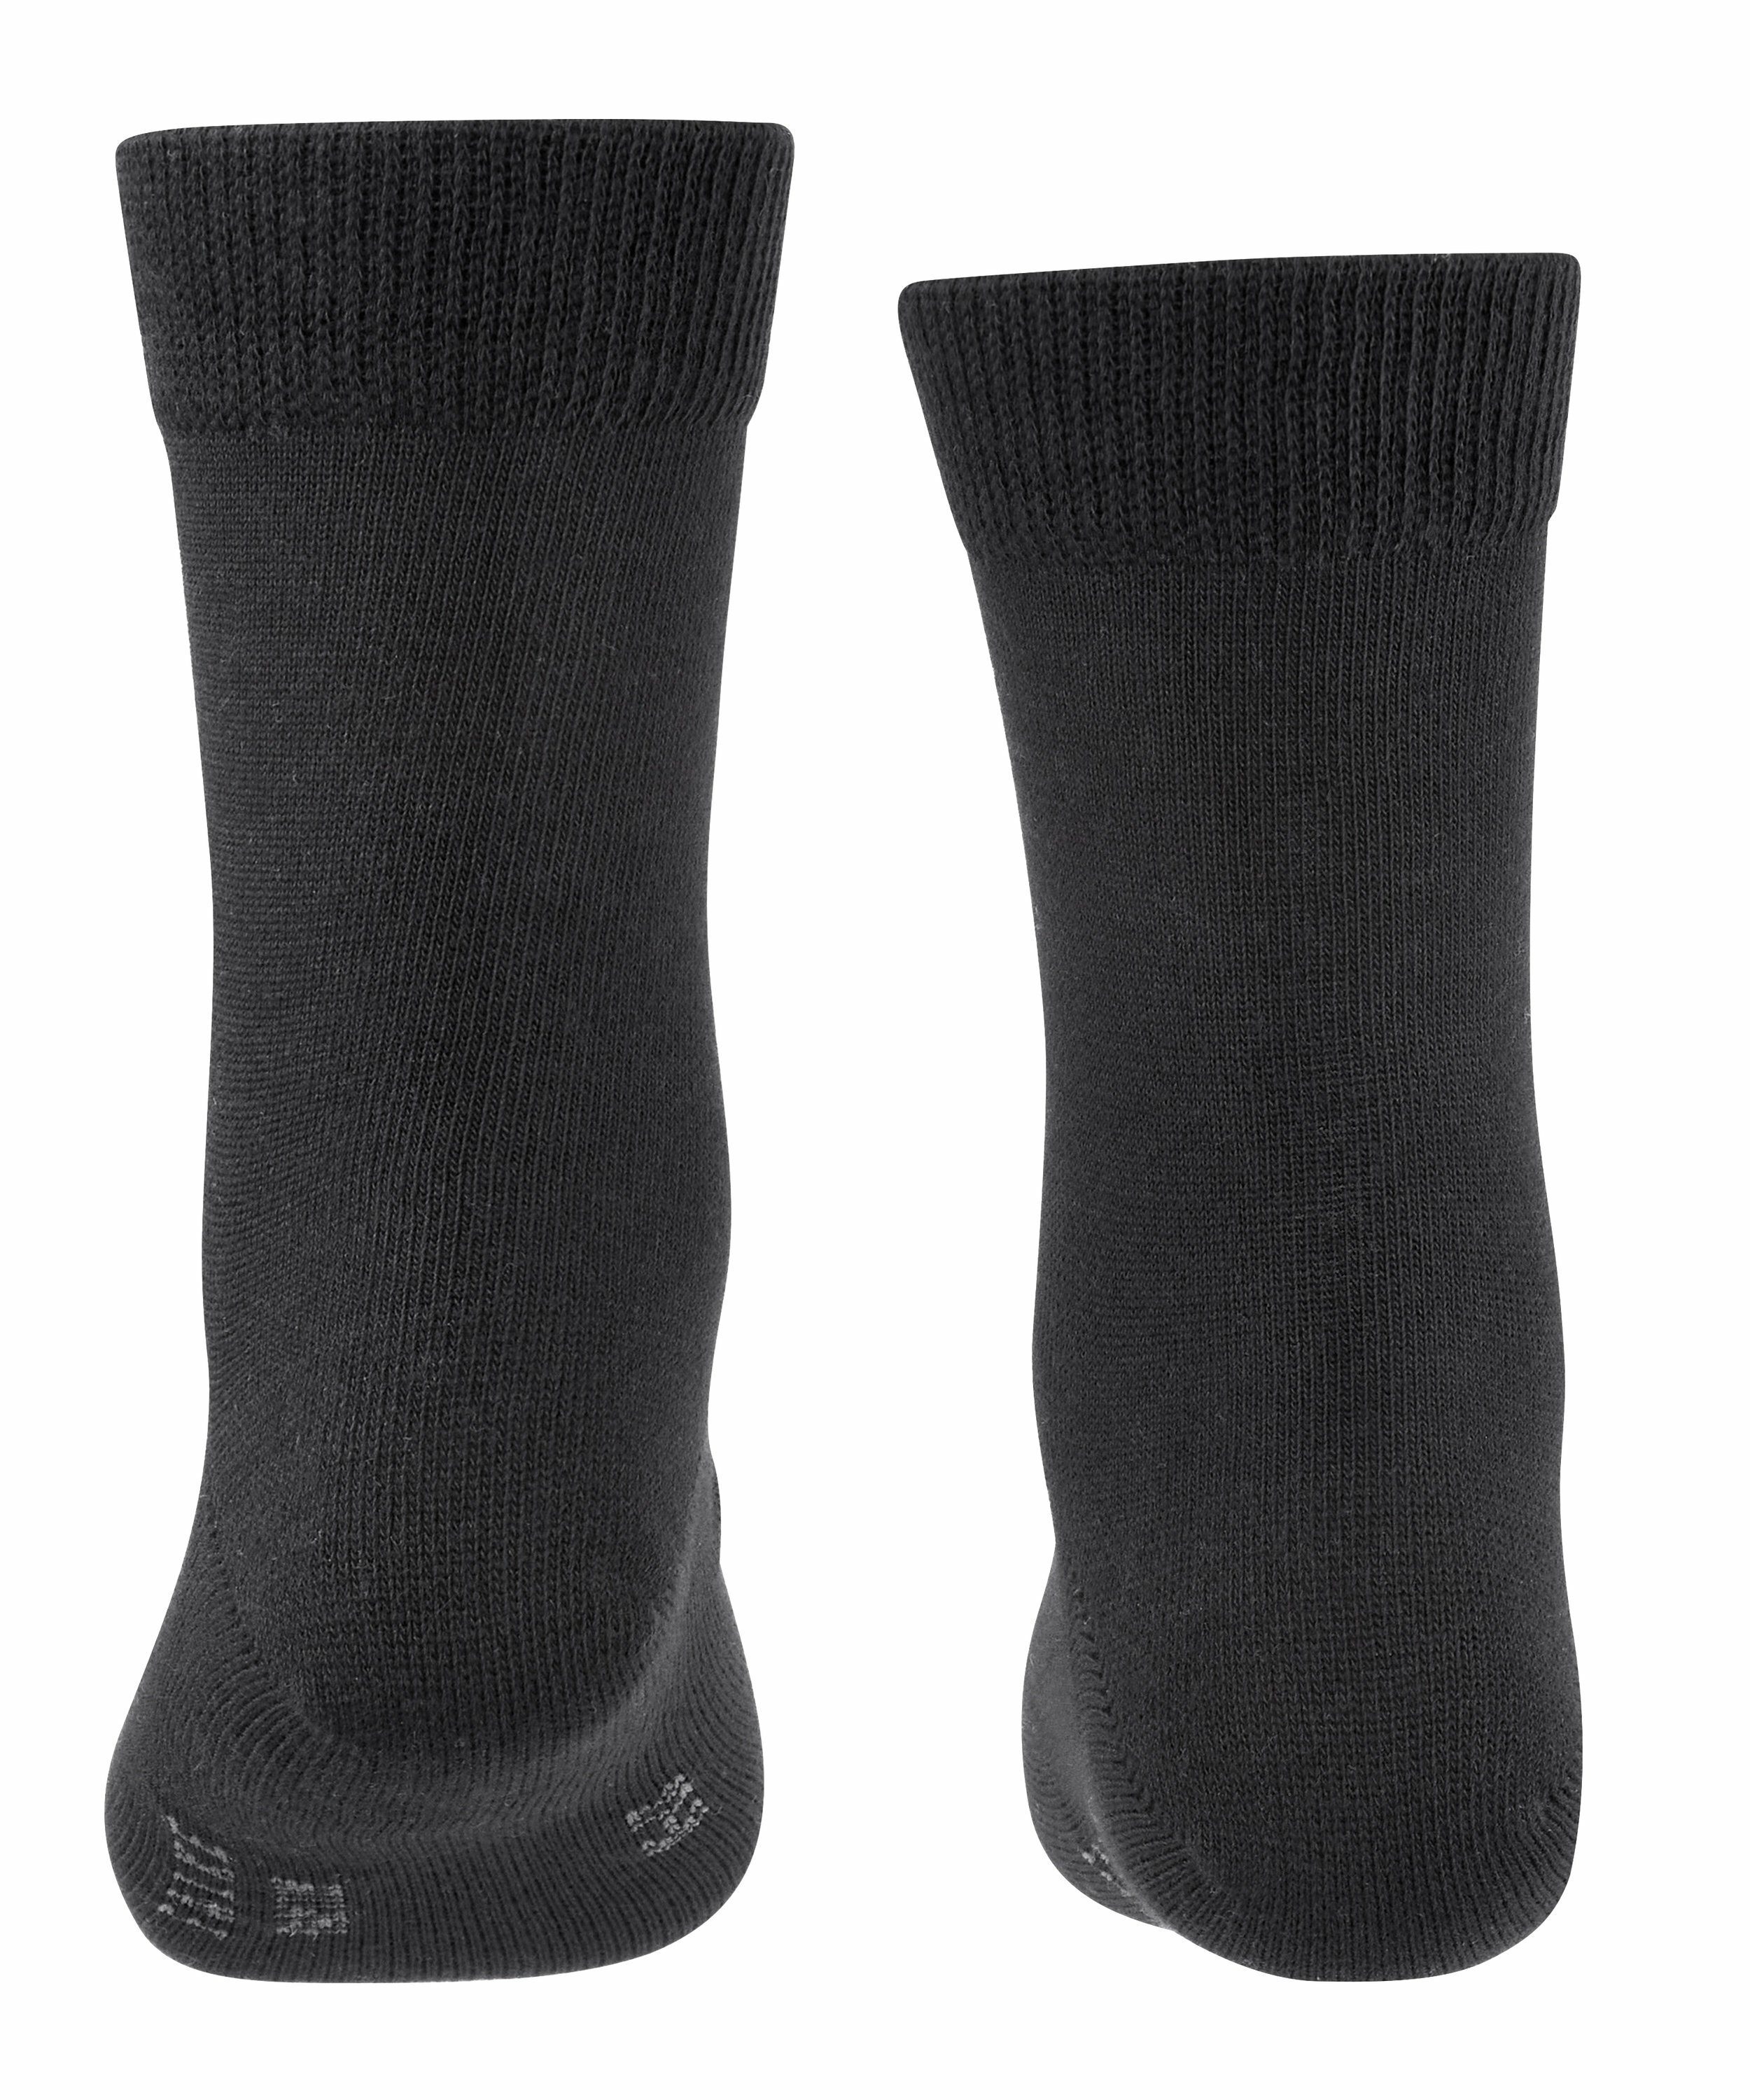 3-Pack Socken FALKE black (3-Paar) Family (3000)